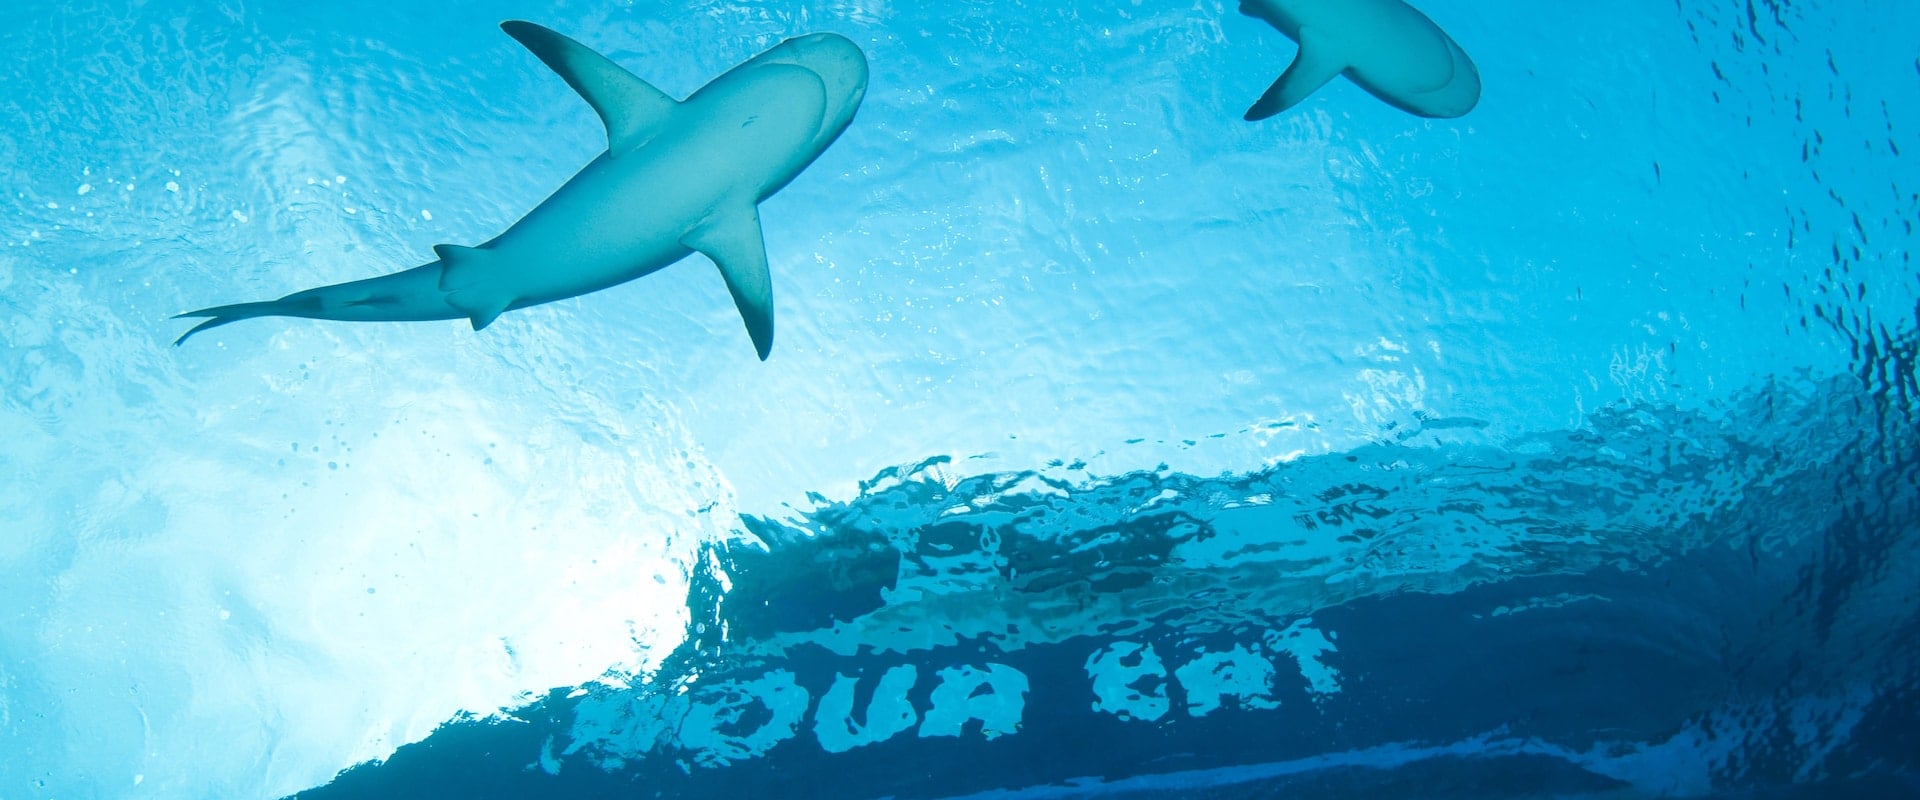 8 Crociere subacquee in Bahamas - LiveAboard.com